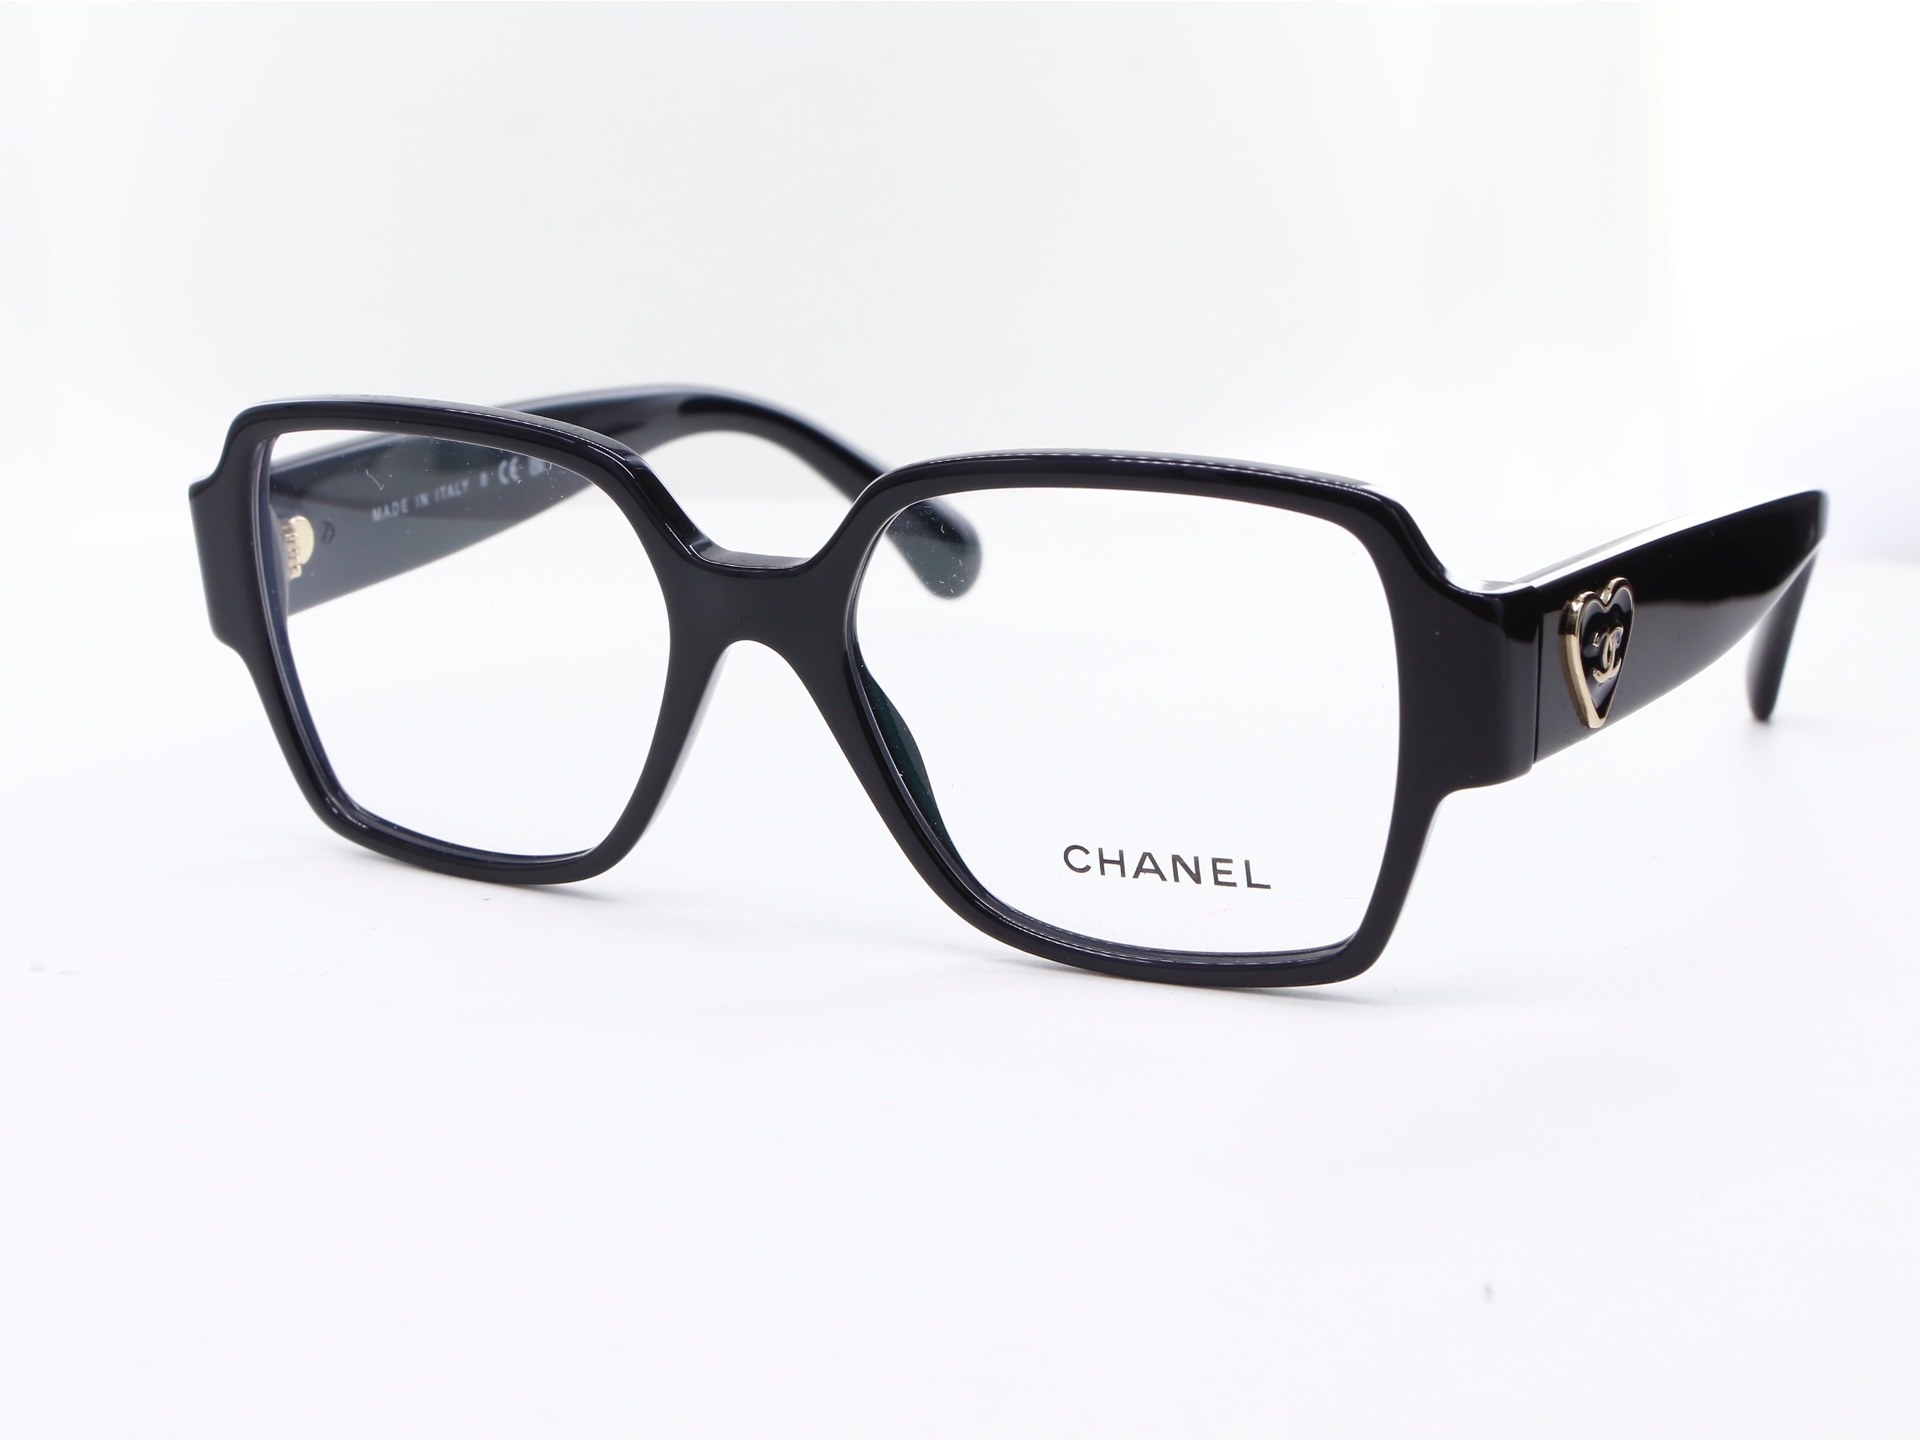 Chanel - ref: 87816